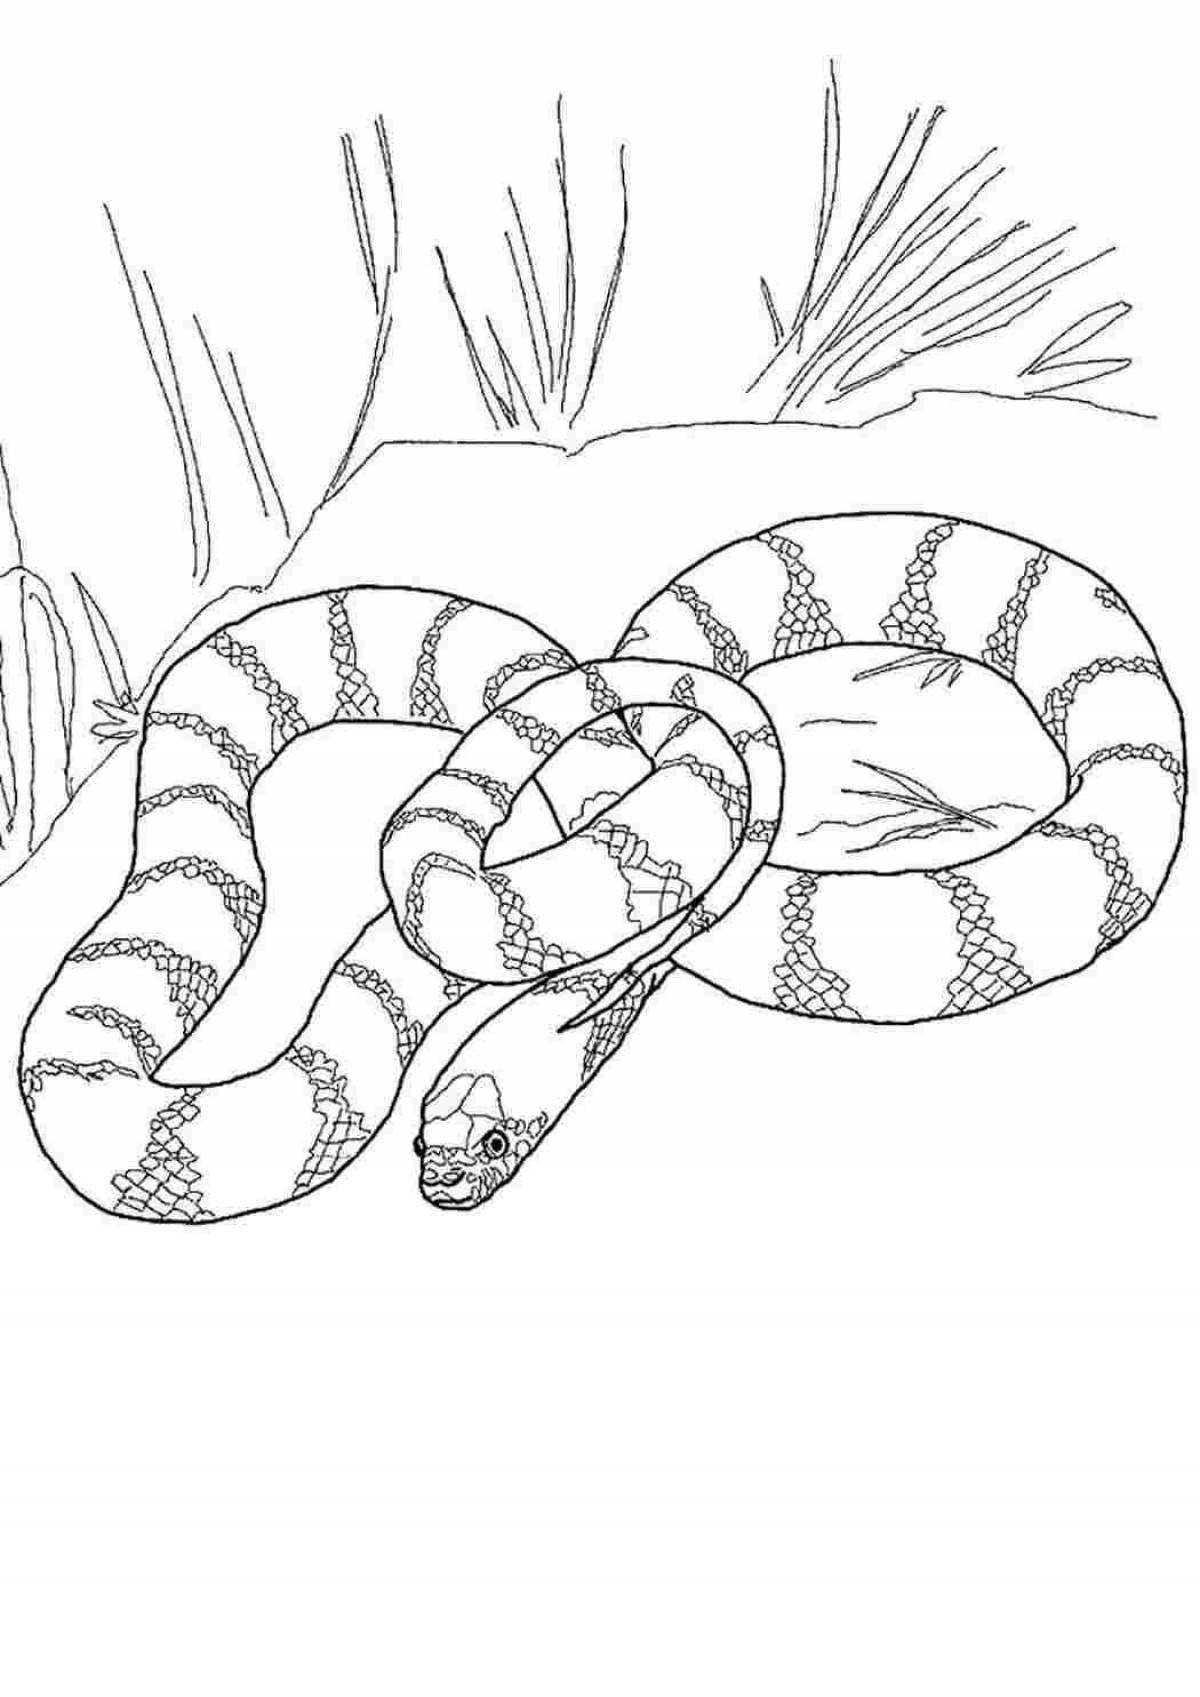 Раскраска величественная баджовская синяя змея